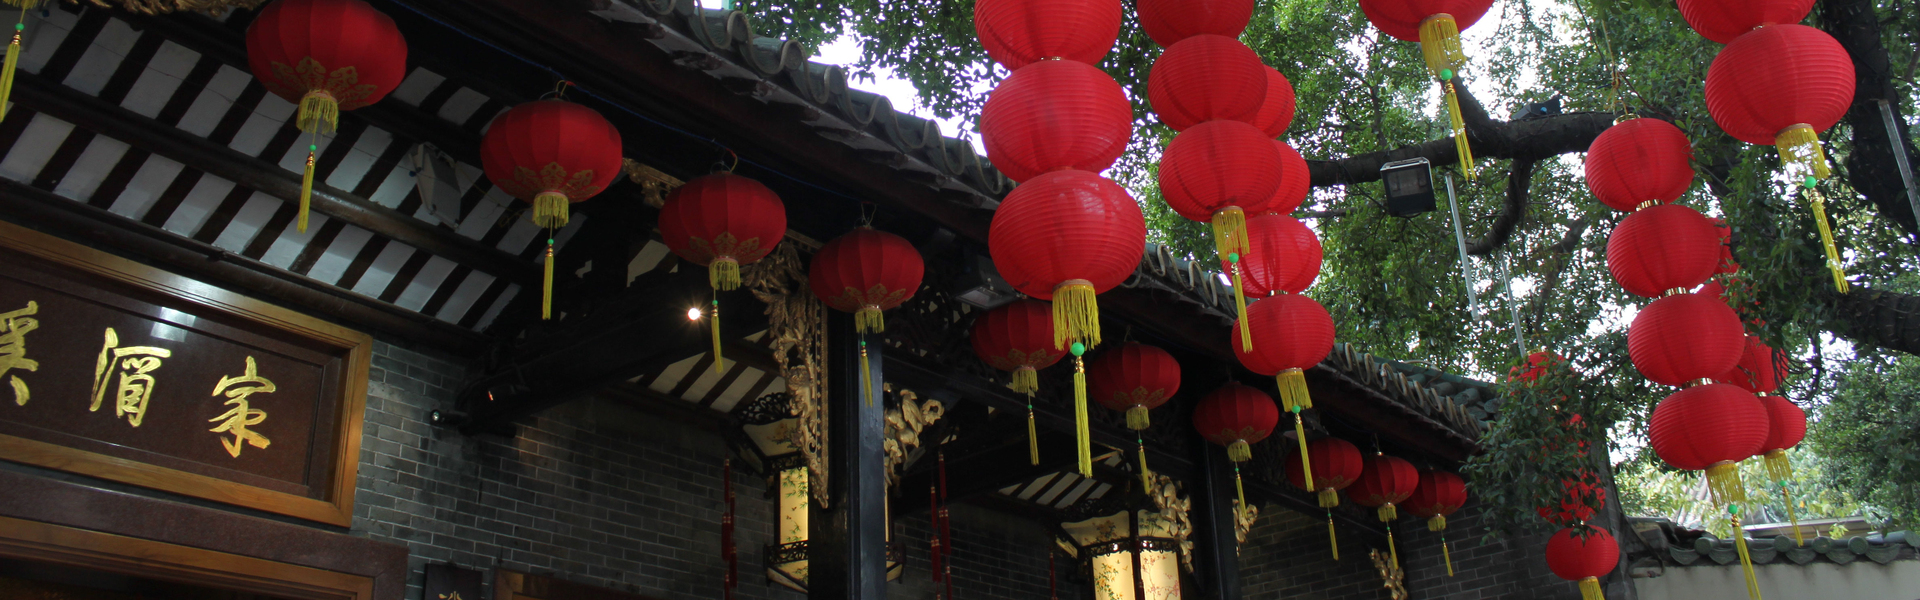 Paper Lanterns in China